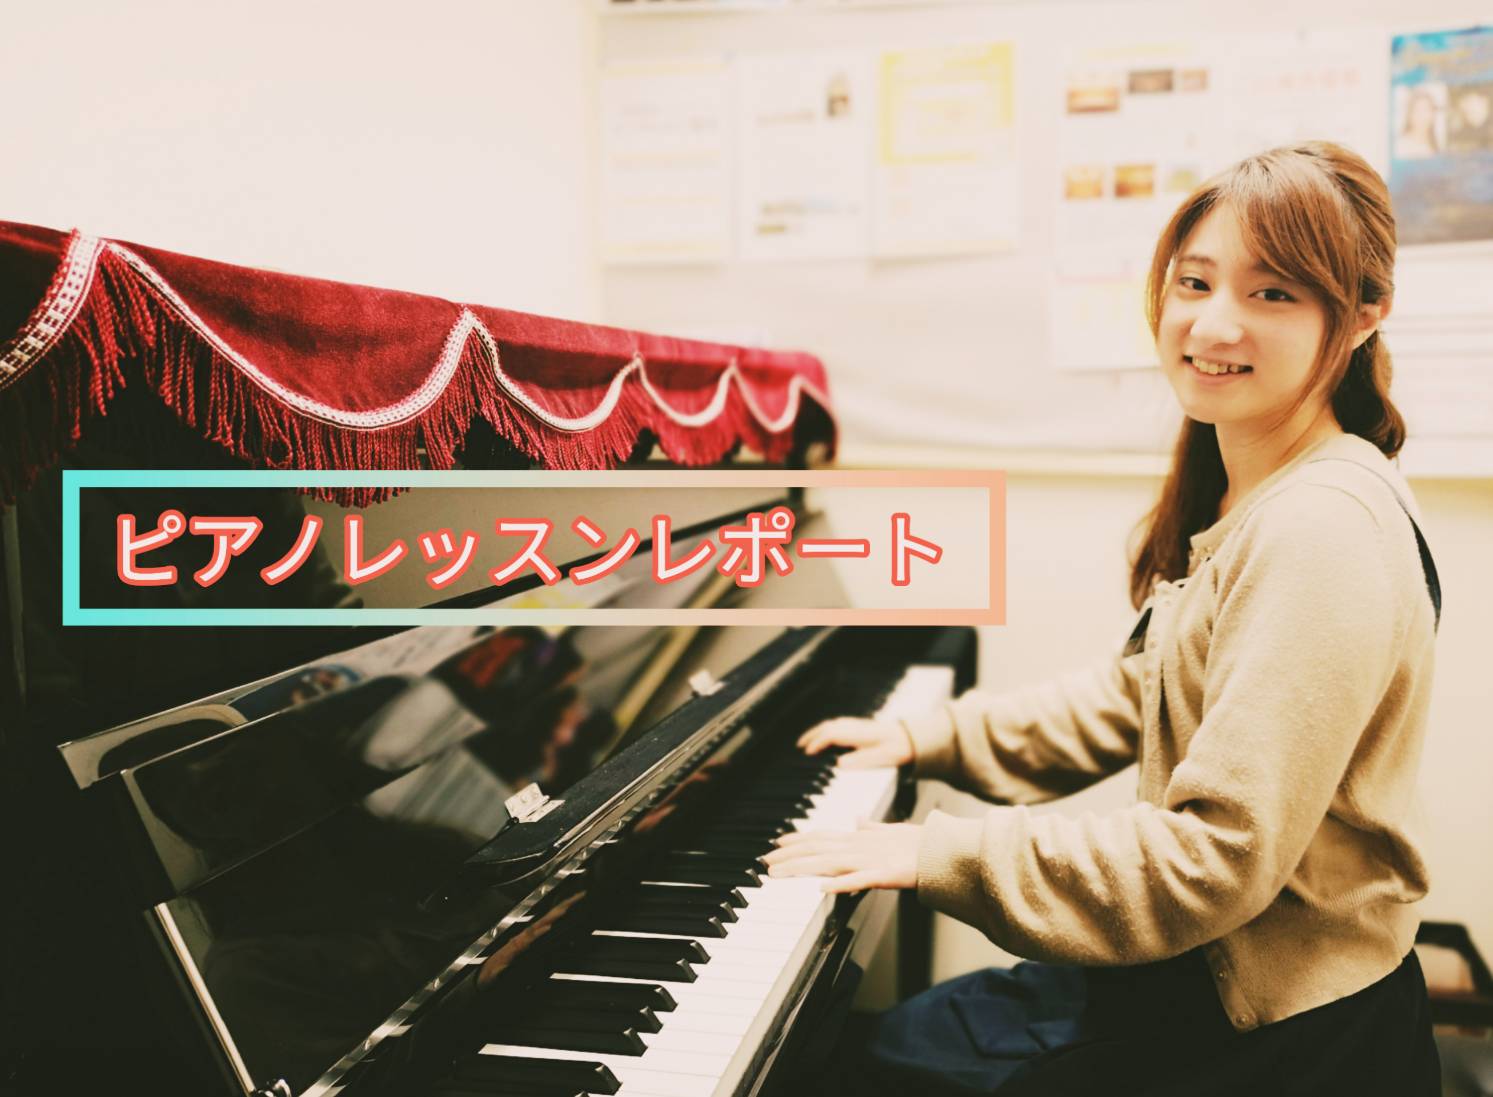 こちらでは、当店ピアノインストラクターの村上が執筆した「ピアノレッスンレポート」の過去記事を掲載しています。 **過去記事はこちら |*第28回|*2022/12|[https://www.shimamura.co.jp/shop/koube/article/product/20221227/241 […]